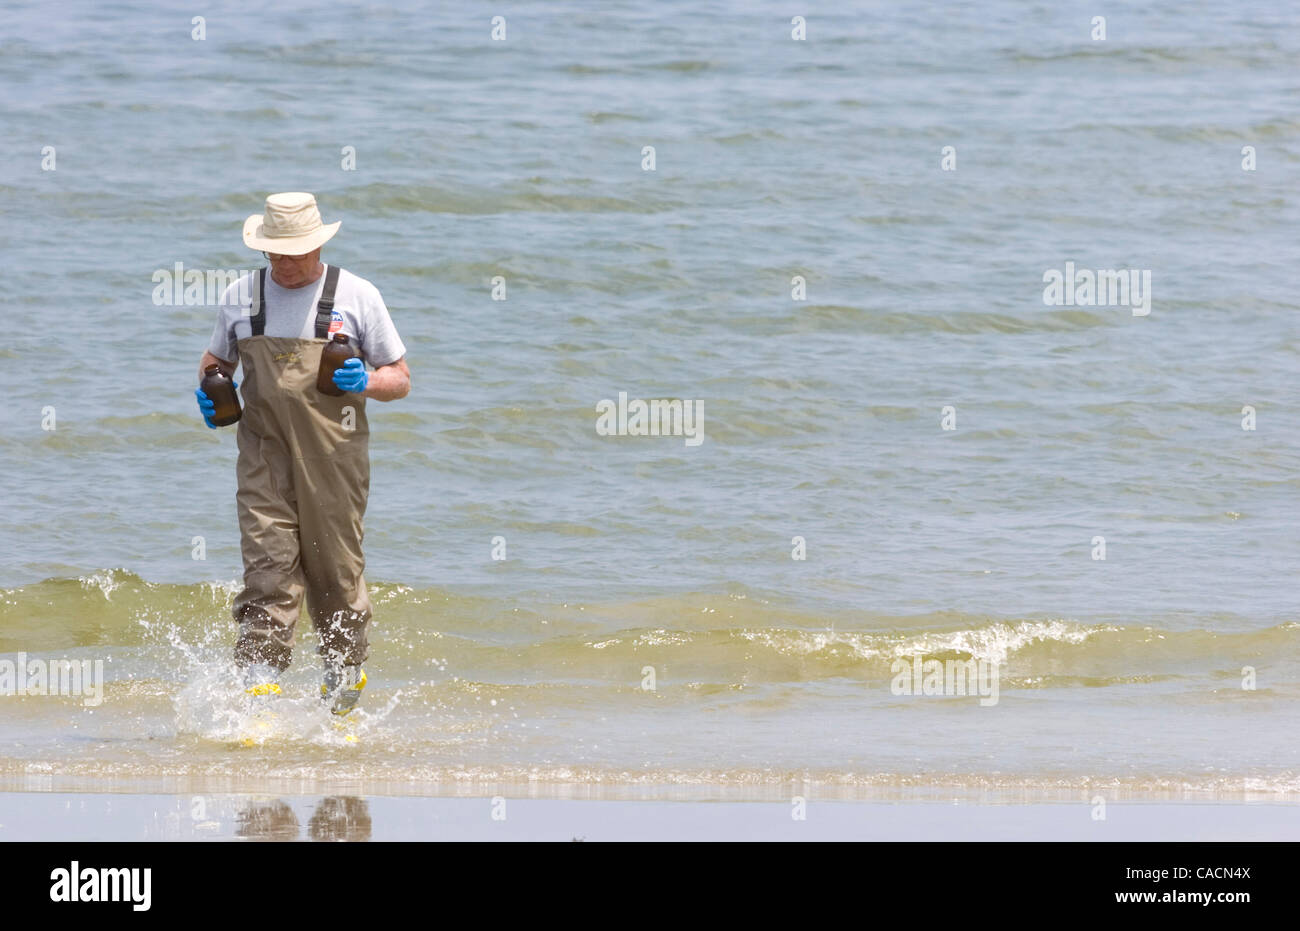 Junio 21, 2010 - Grand Isle, Louisiana, EE.UU. - Randy Schademann, un coordinador de escena con la Agencia de Protección Ambiental de Estados Unidos, regresa con muestras de agua en el Golfo de México frente a la playa de Grand Isle, Luisiana, Estados Unidos, 21 de junio de 2010. Las muestras están siendo analizadas por la EPA para el aceite y chemi Foto de stock